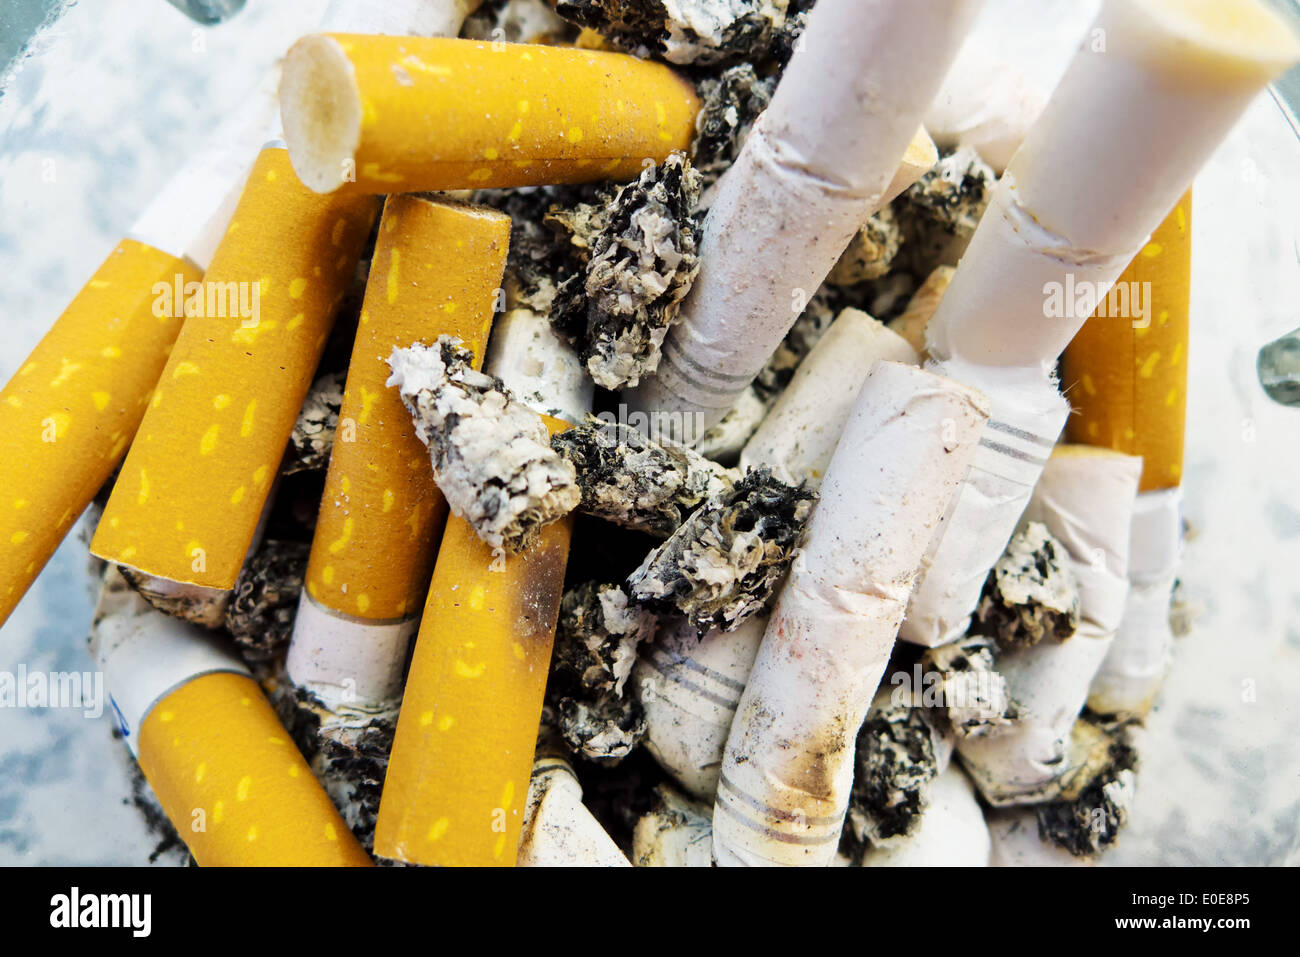 Many springs of cigarettes lie in an ashtray., Viele Kippen von Zigaretten liegen in einem Aschenbecher. Stock Photo